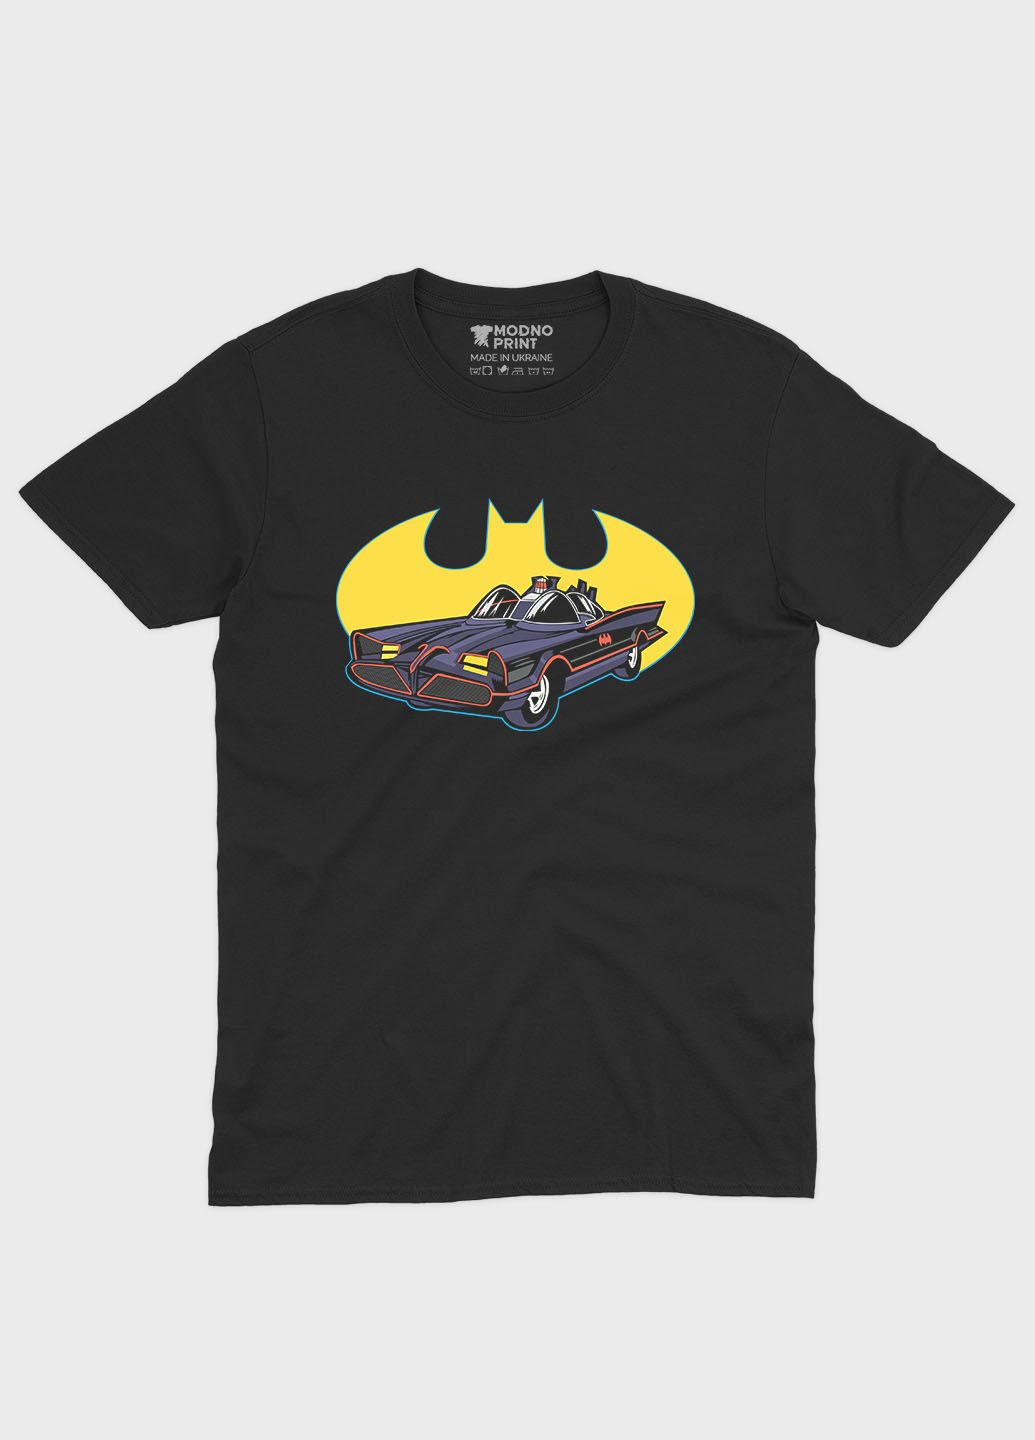 Черная летняя мужская футболка с принтом супергероя - бэтмен (ts001-1-bl-006-003-034-f) Modno